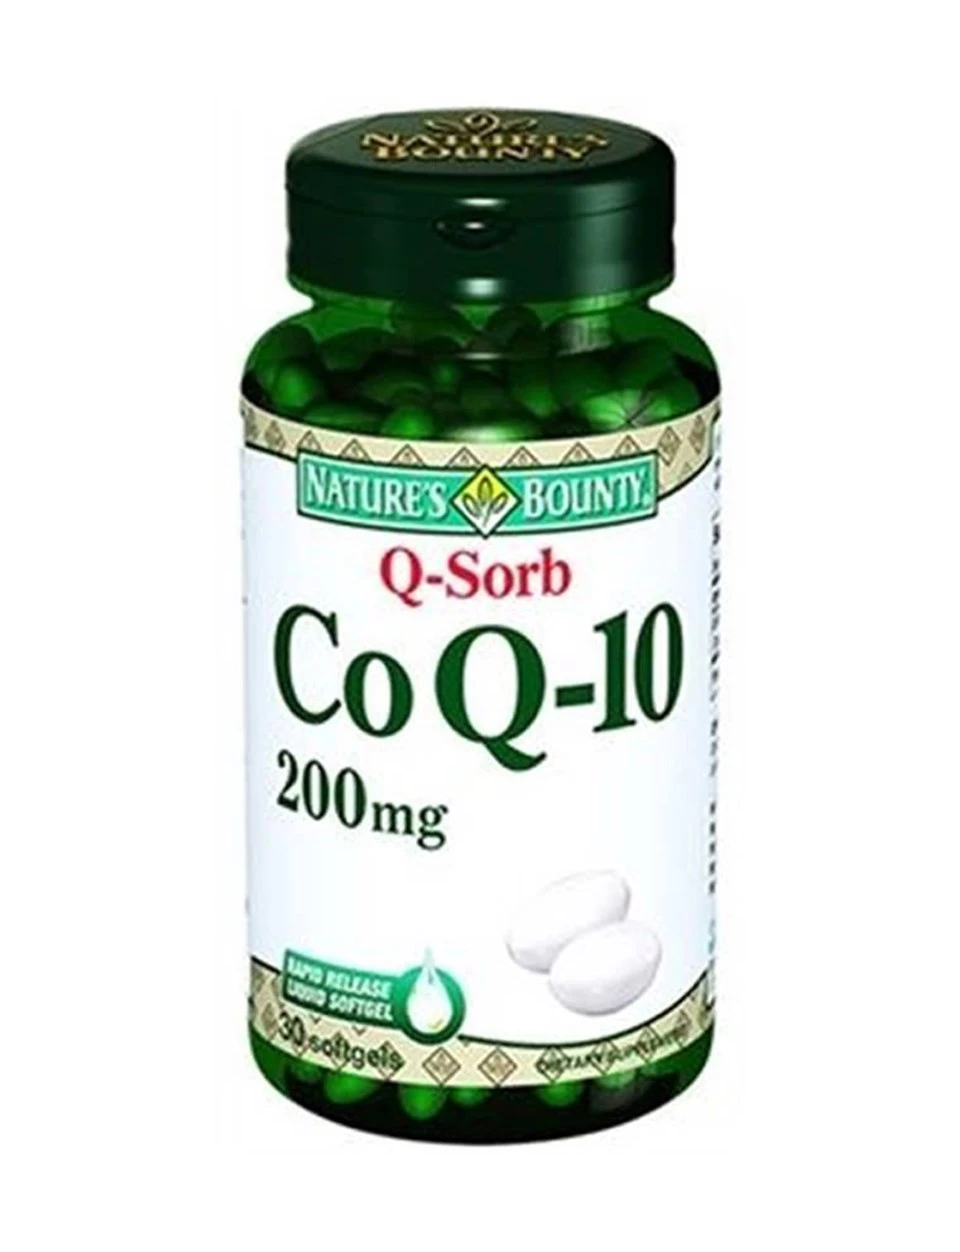 Nature's Bounty Co Q-10 200 mg Q-Sorb 30 Softgel